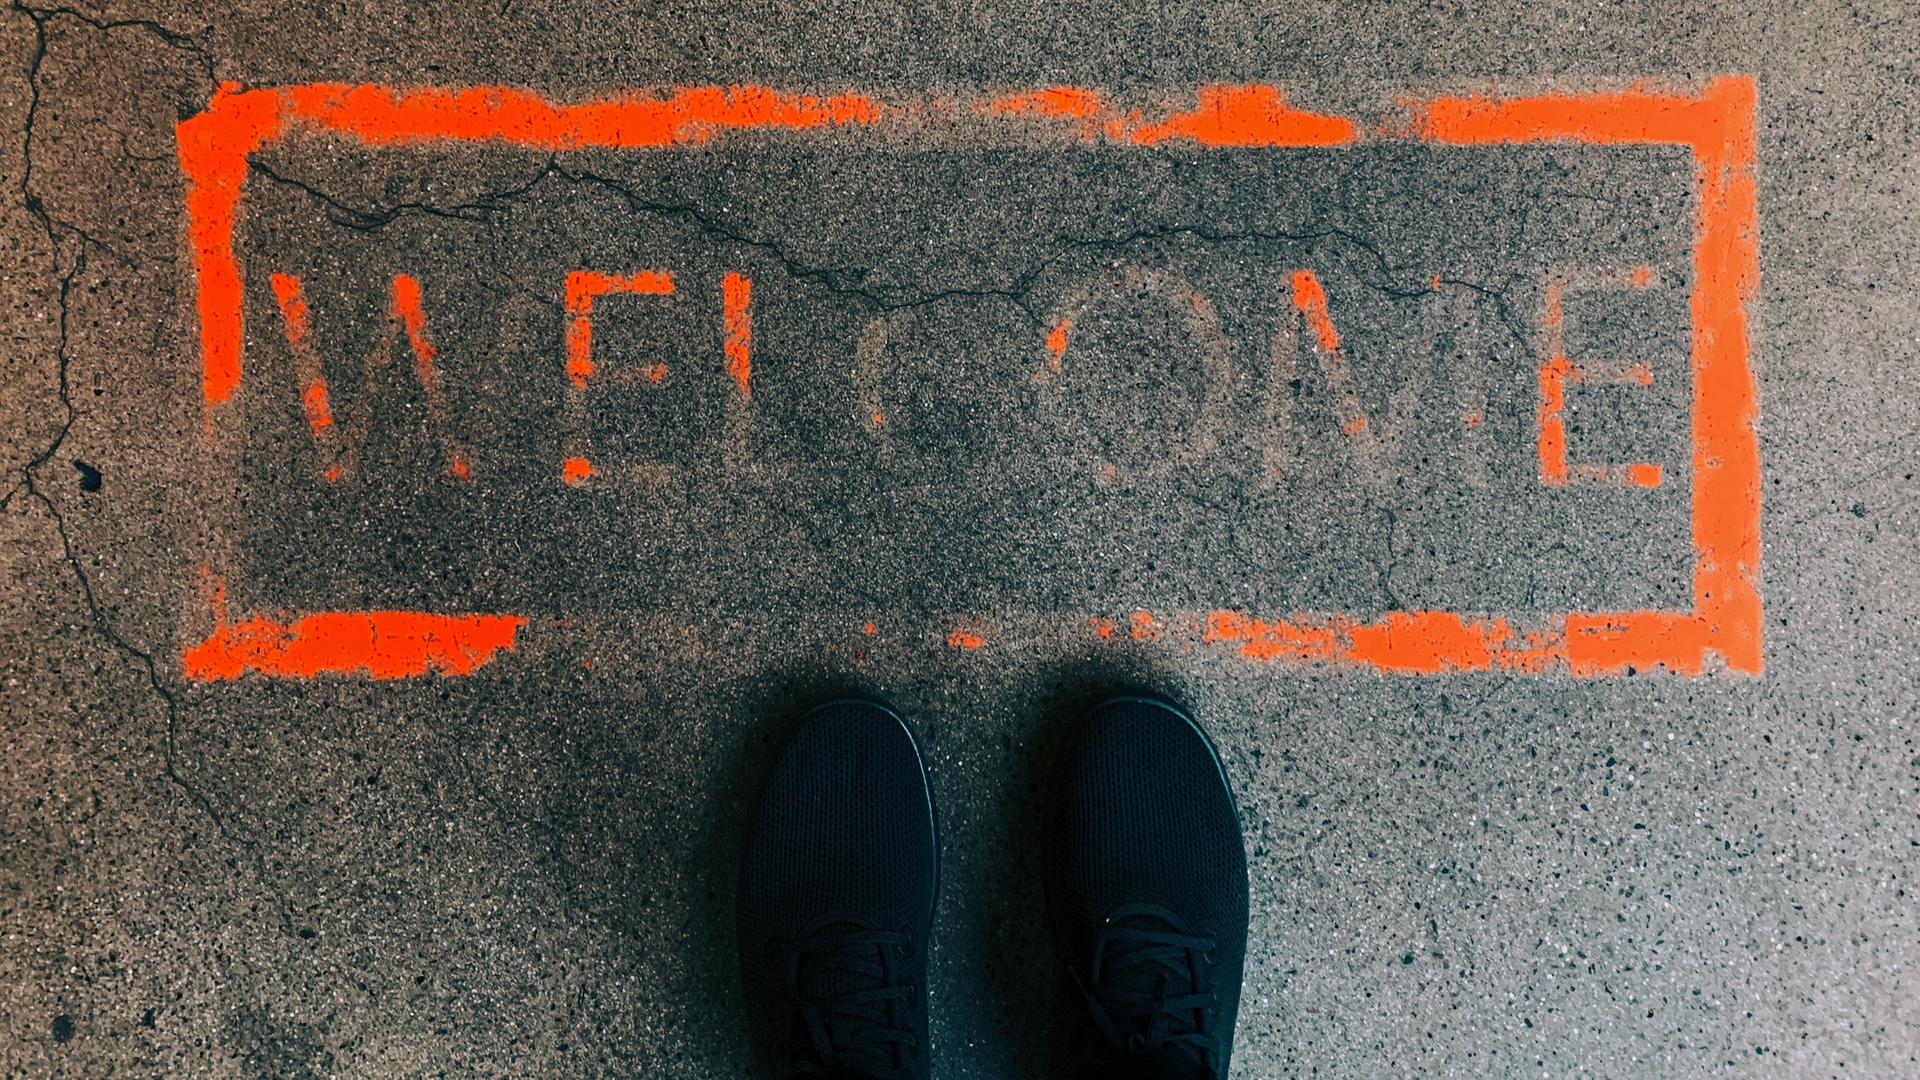 Ein orangefarbenes Rechteck auf dem Boden. Darin das Wort "Welcome". Die Farbe ist größtenteils bereits verblasst. Davor, im unteren Bildbereich: zwei Schuhspitzen.